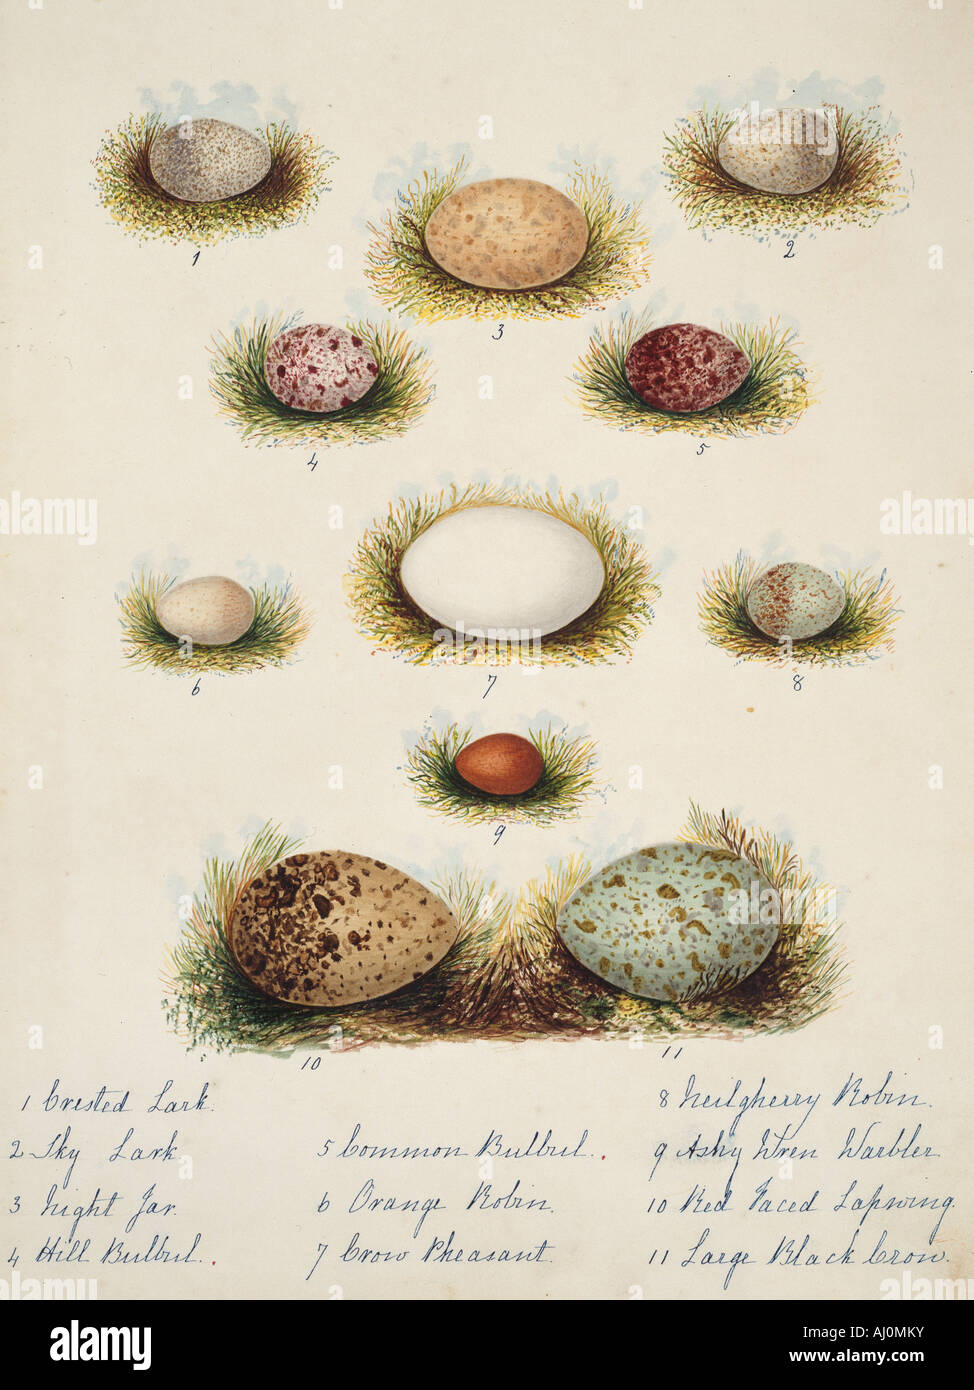 Raccolta delle uova di volatili Foto Stock